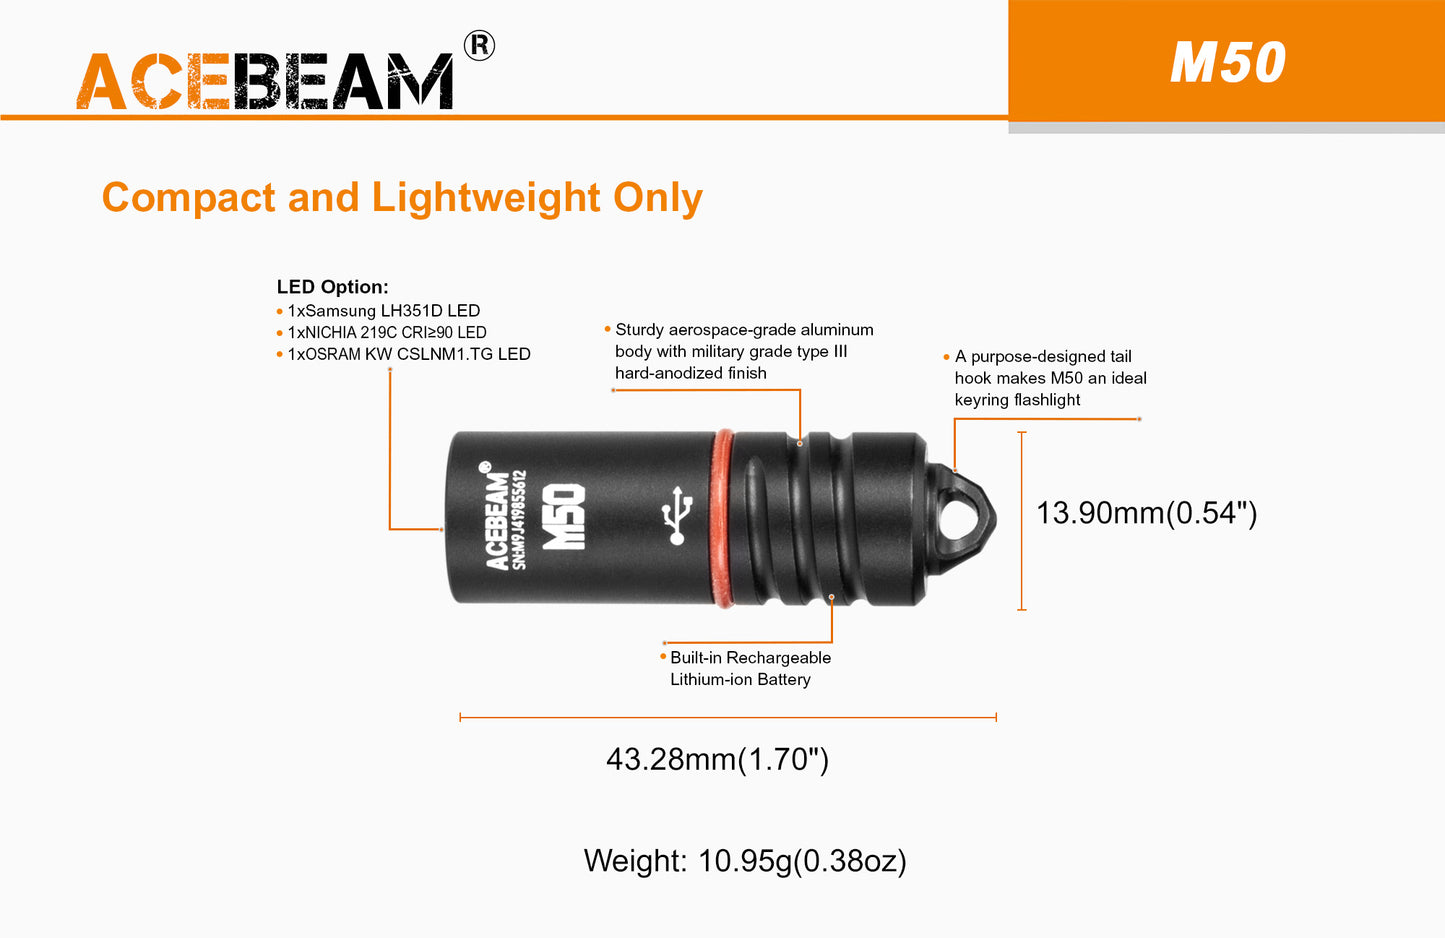 Acebeam M50 Rechargeable LED Keychain Flashlight